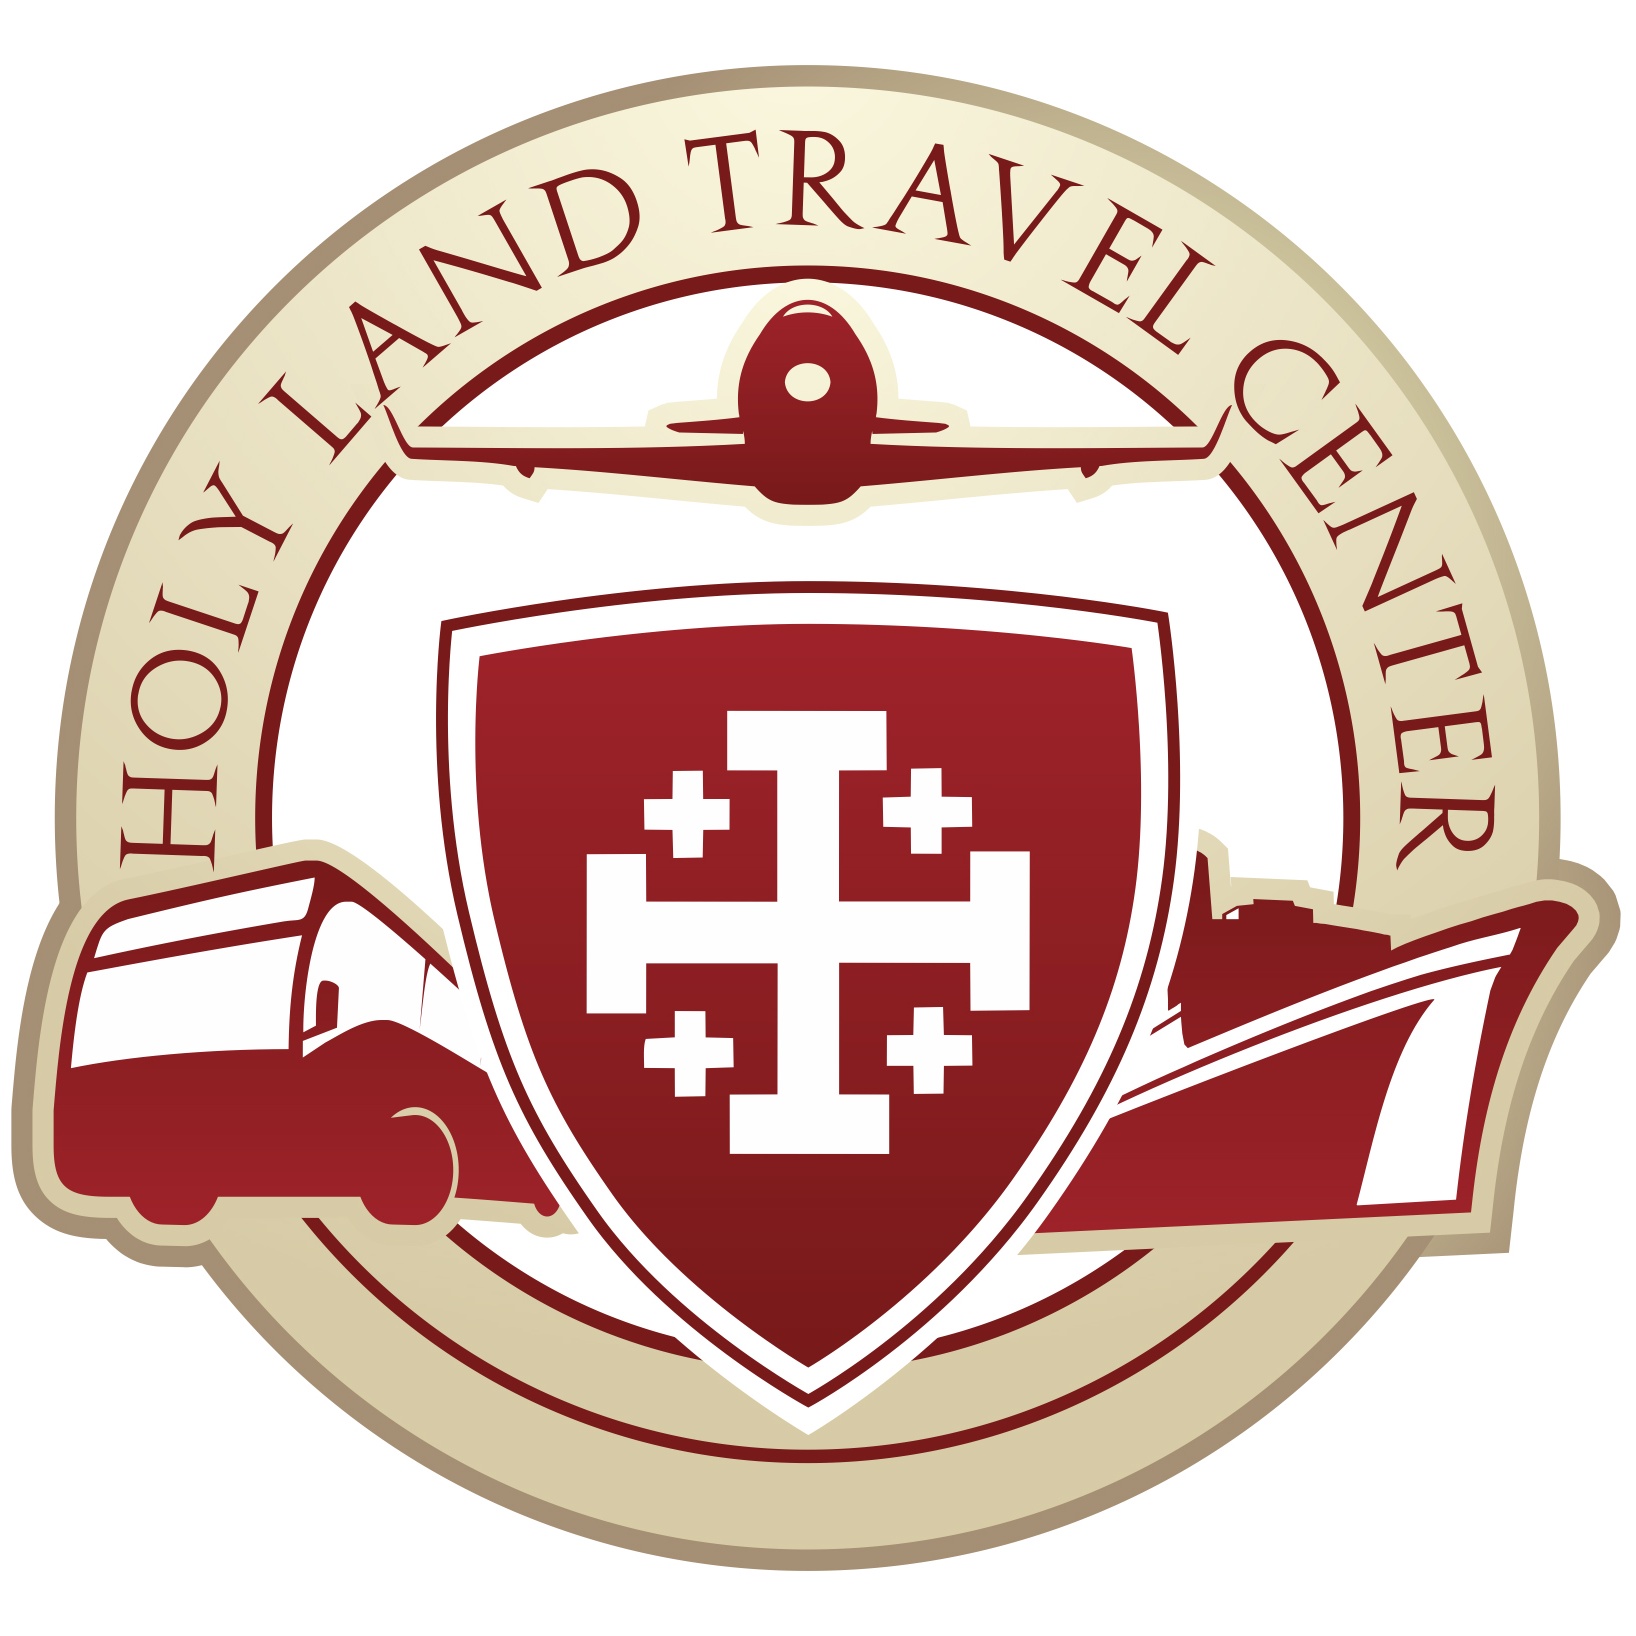 holy land travel center albuquerque